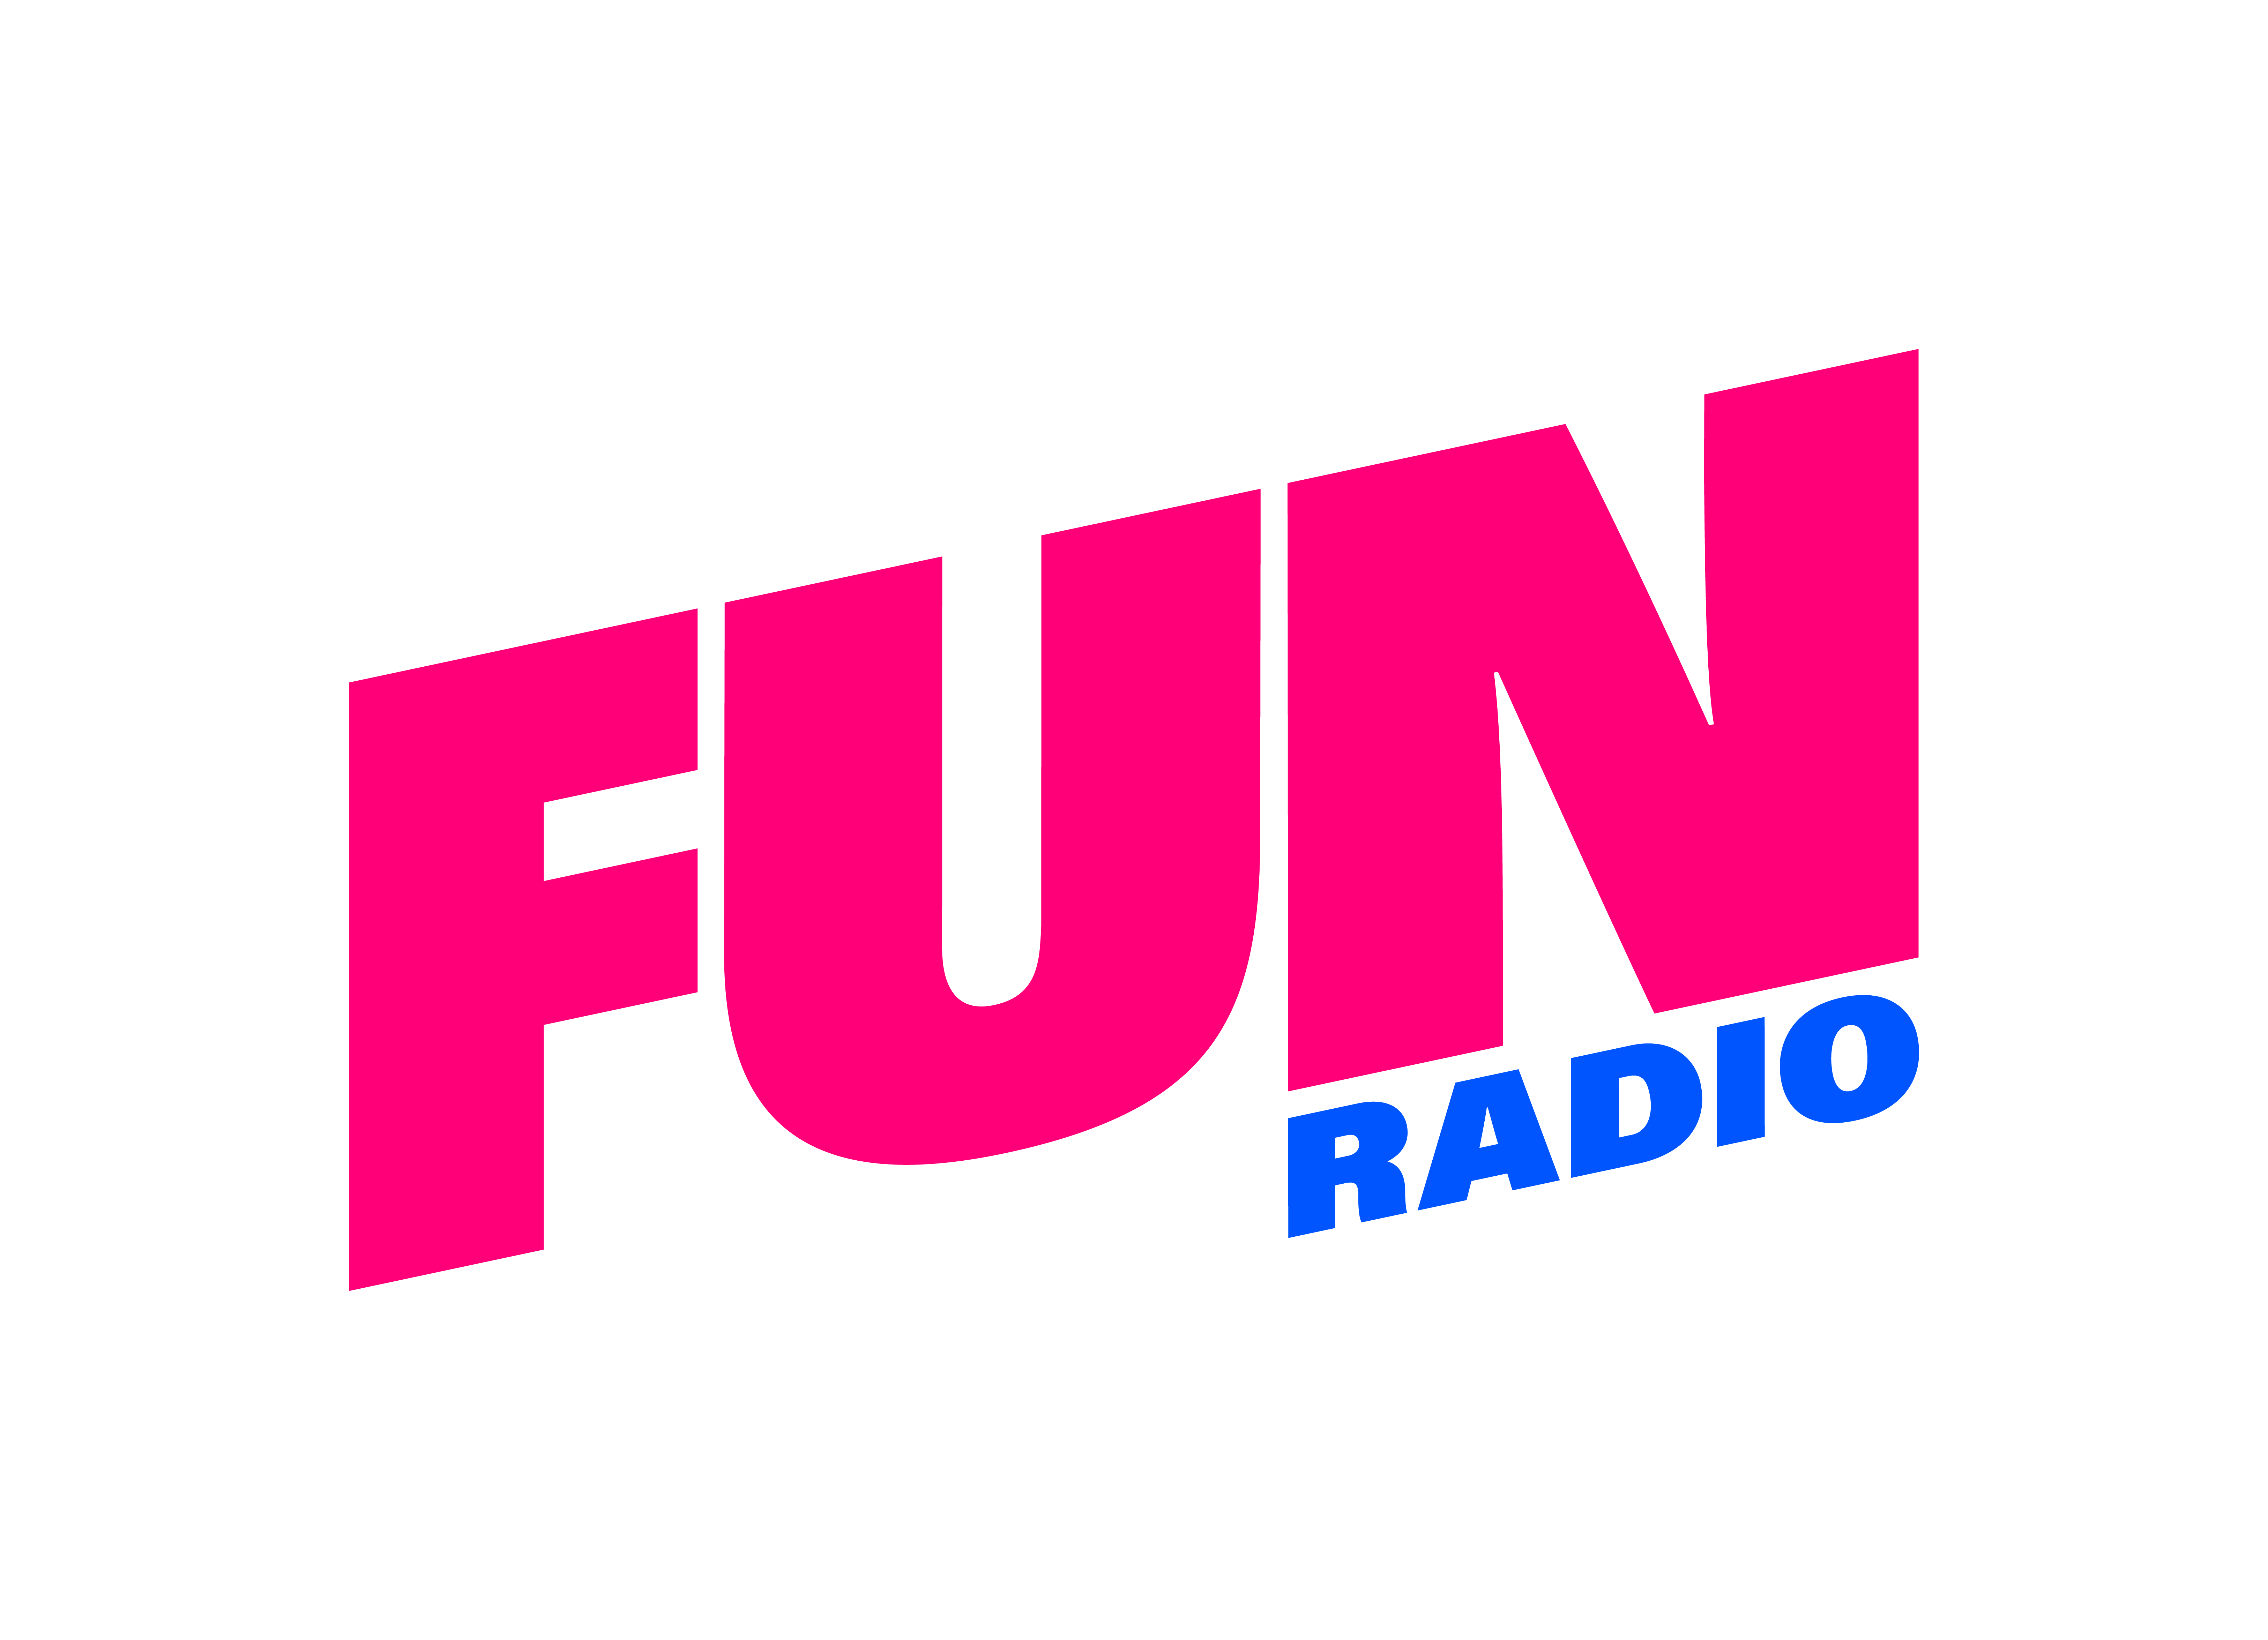 Fun radio